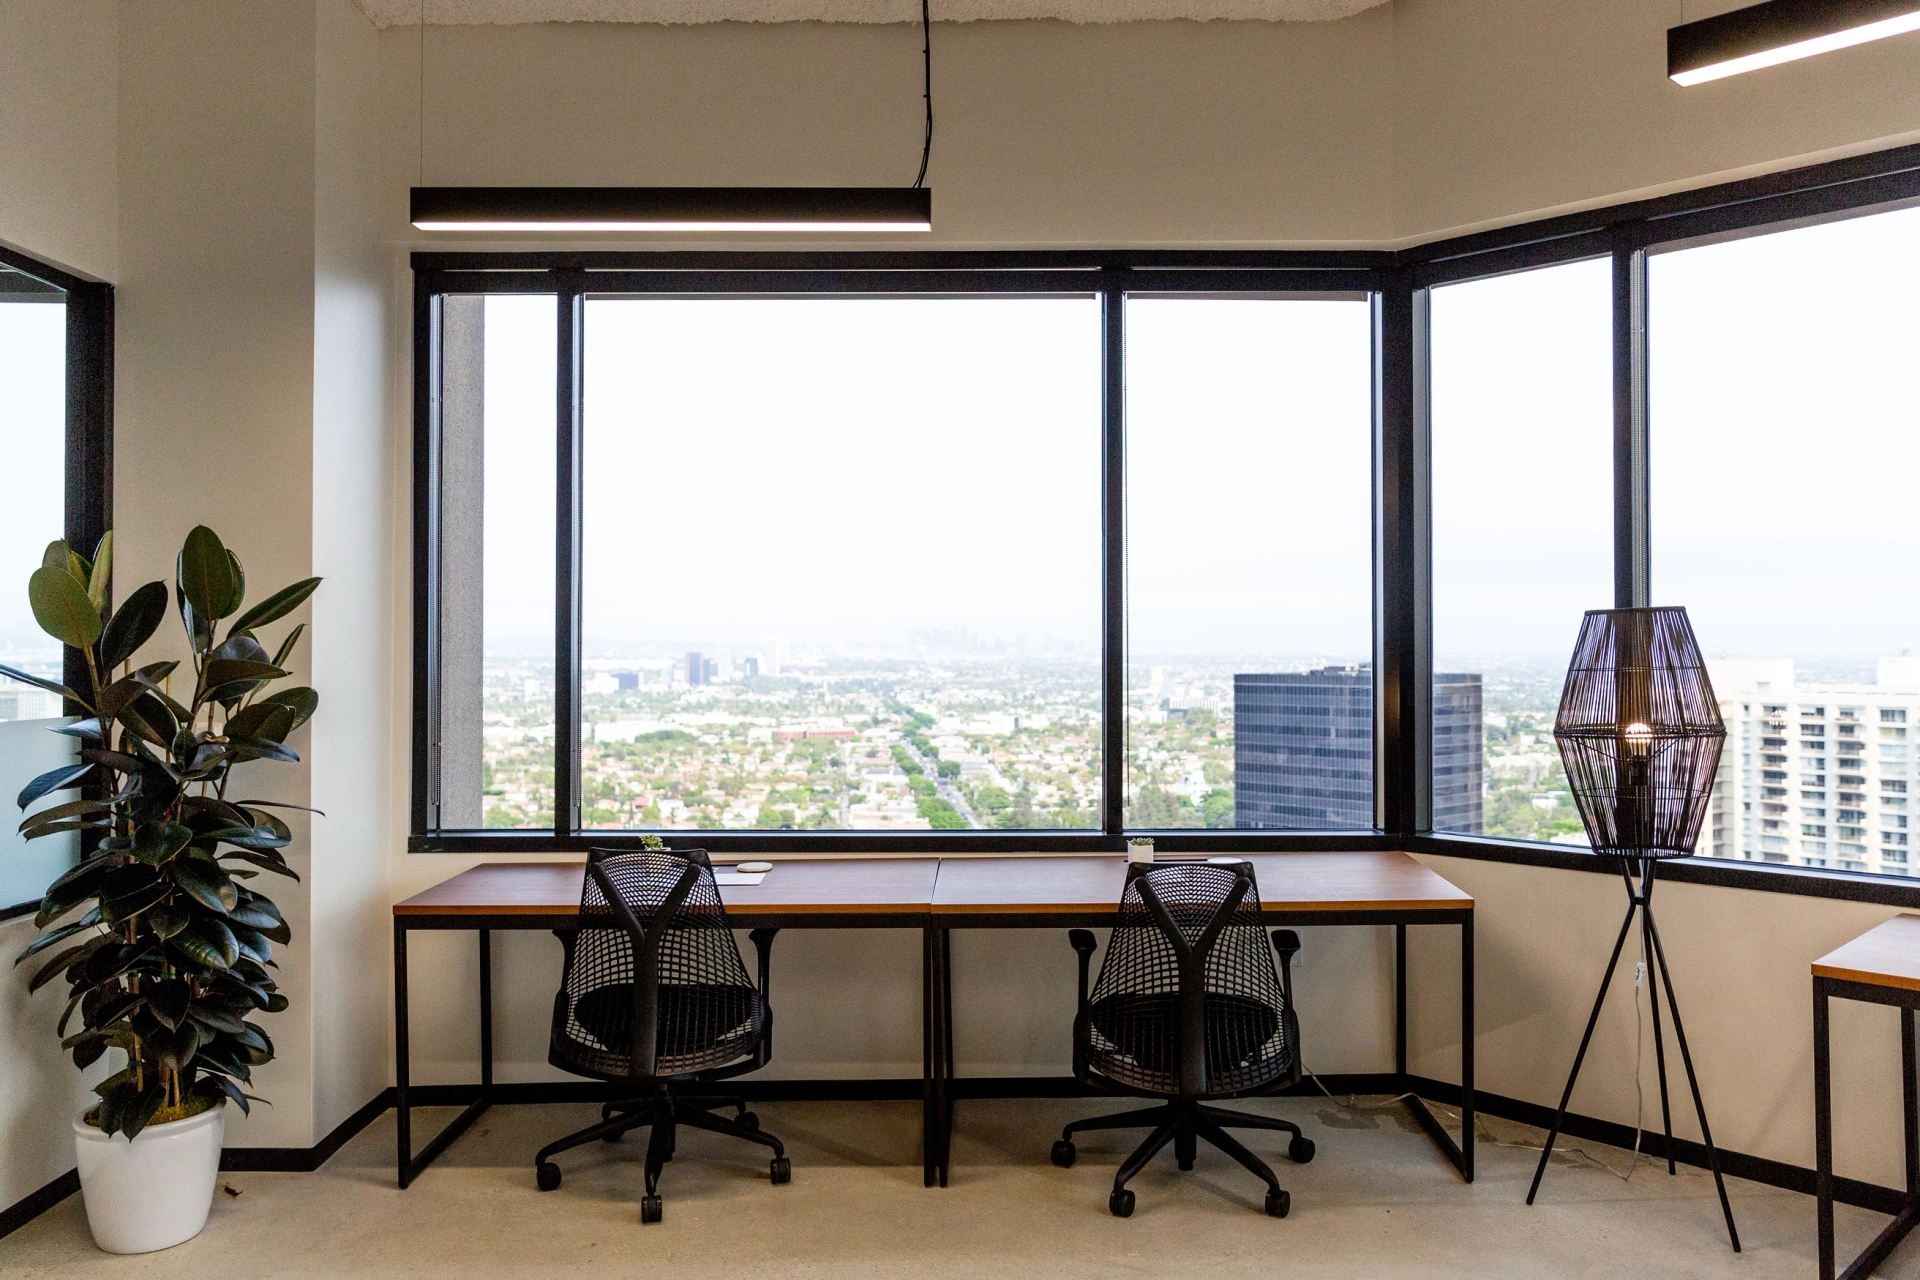 Moderne kantoorruimte met een groot raam met uitzicht op de stad Los Angeles, een gedeeld bureau en zitplaatsen voor drie personen, aangevuld met kamerplanten en stijlvolle verlichting.